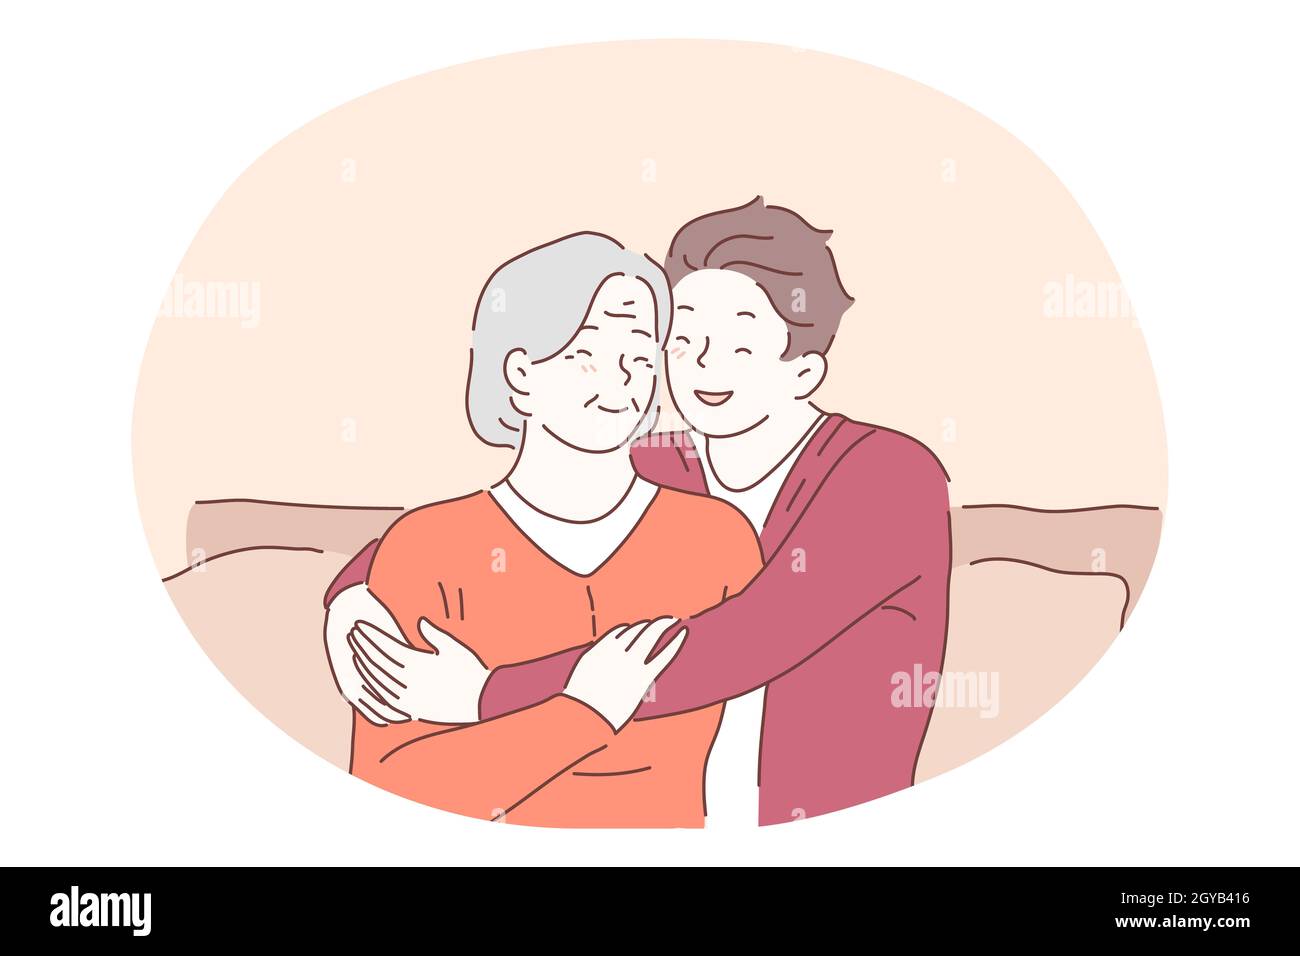 Großmutter und Enkelkind, glückliche Familie, Generationen Konzept. Glücklich lächelnd junge teen Zeichentrickfigur sitzt auf Sofa und umarmt ältere w Stockfoto